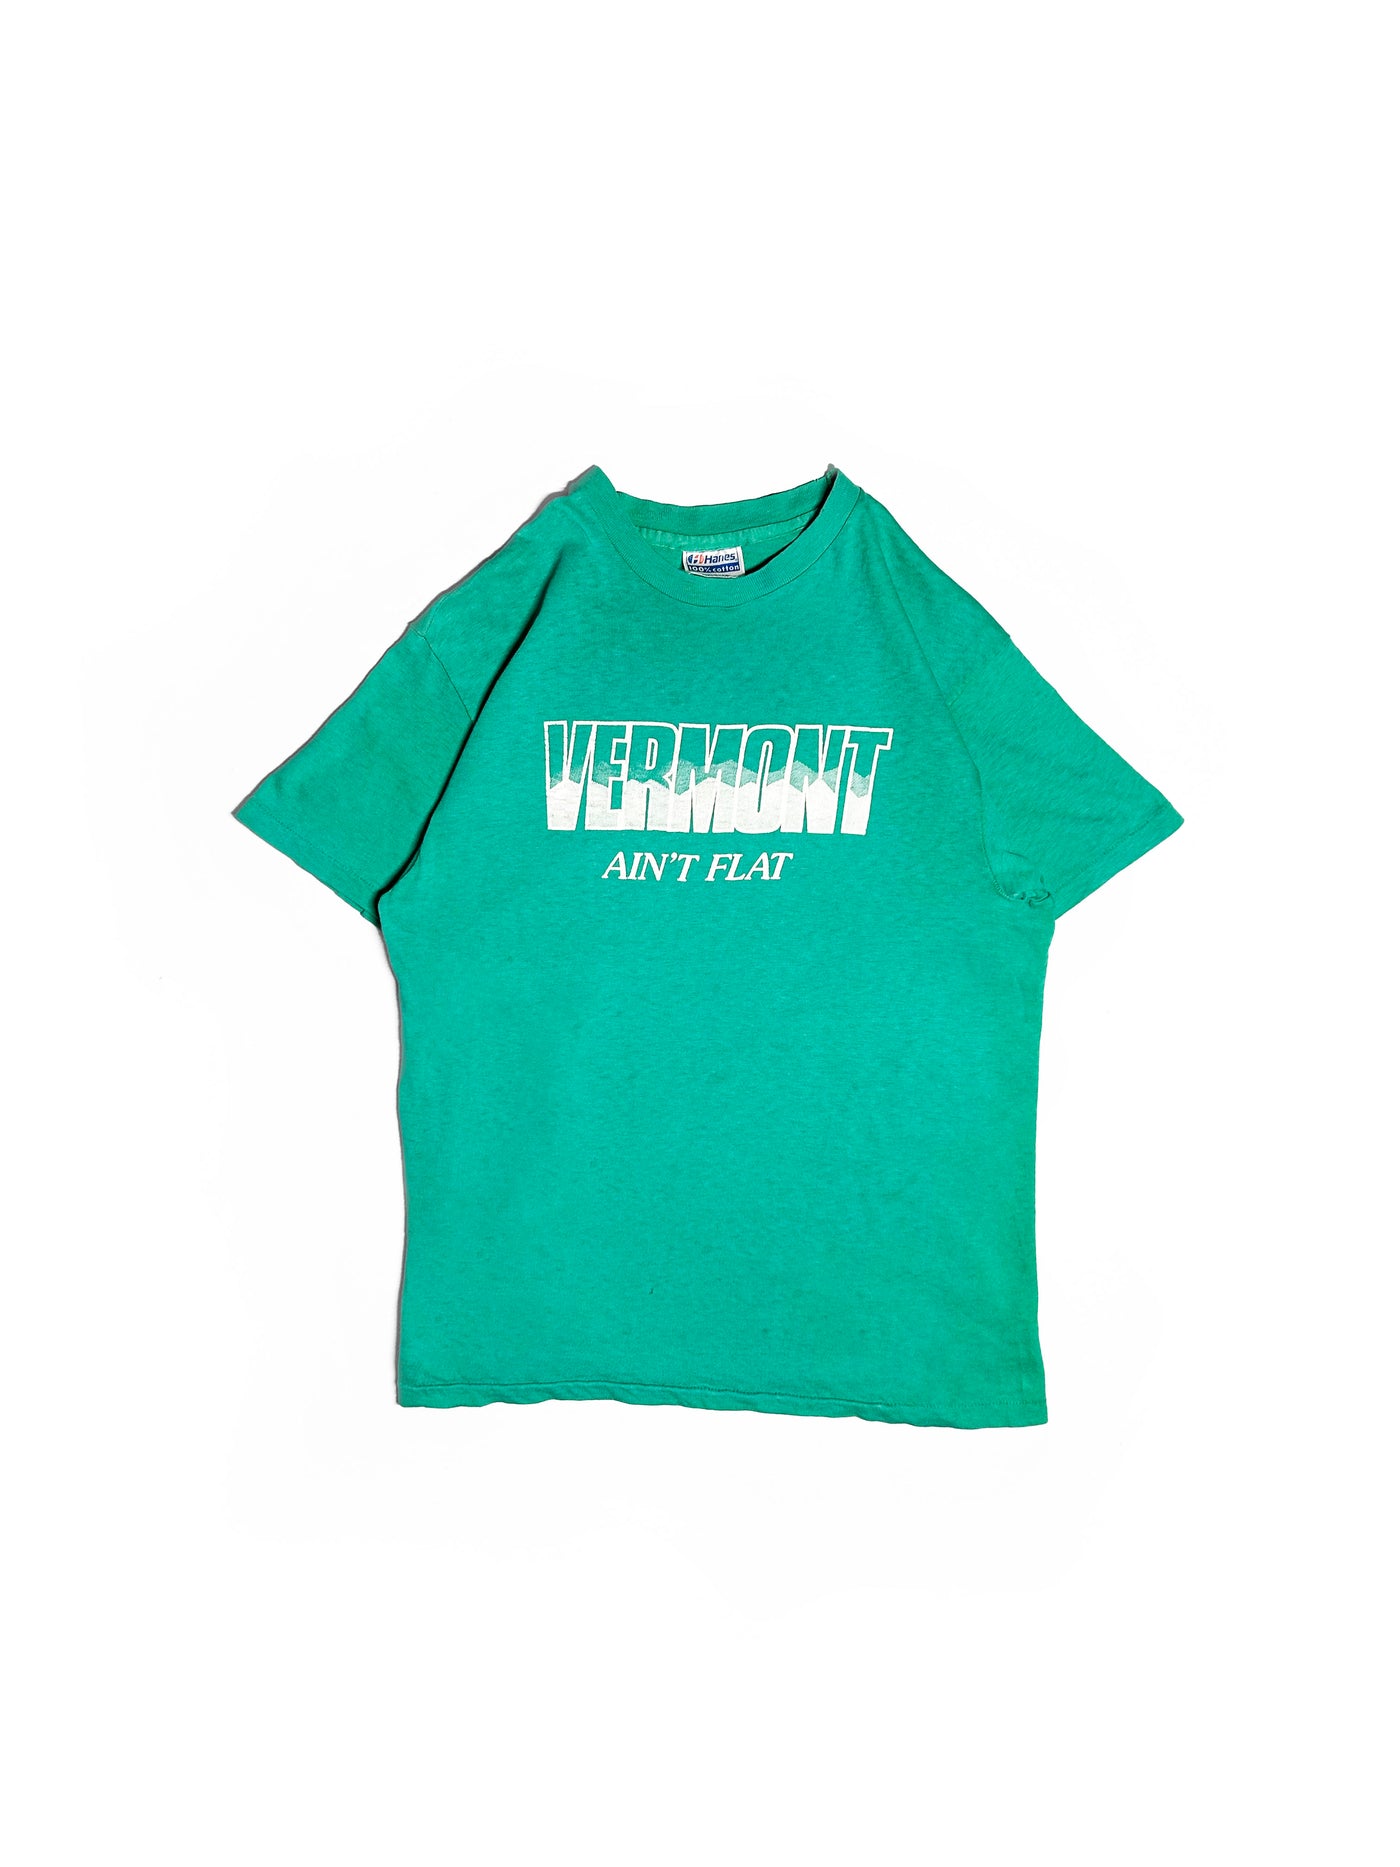 Vintage 80s Vermont Ain’t Flat T-Shirt